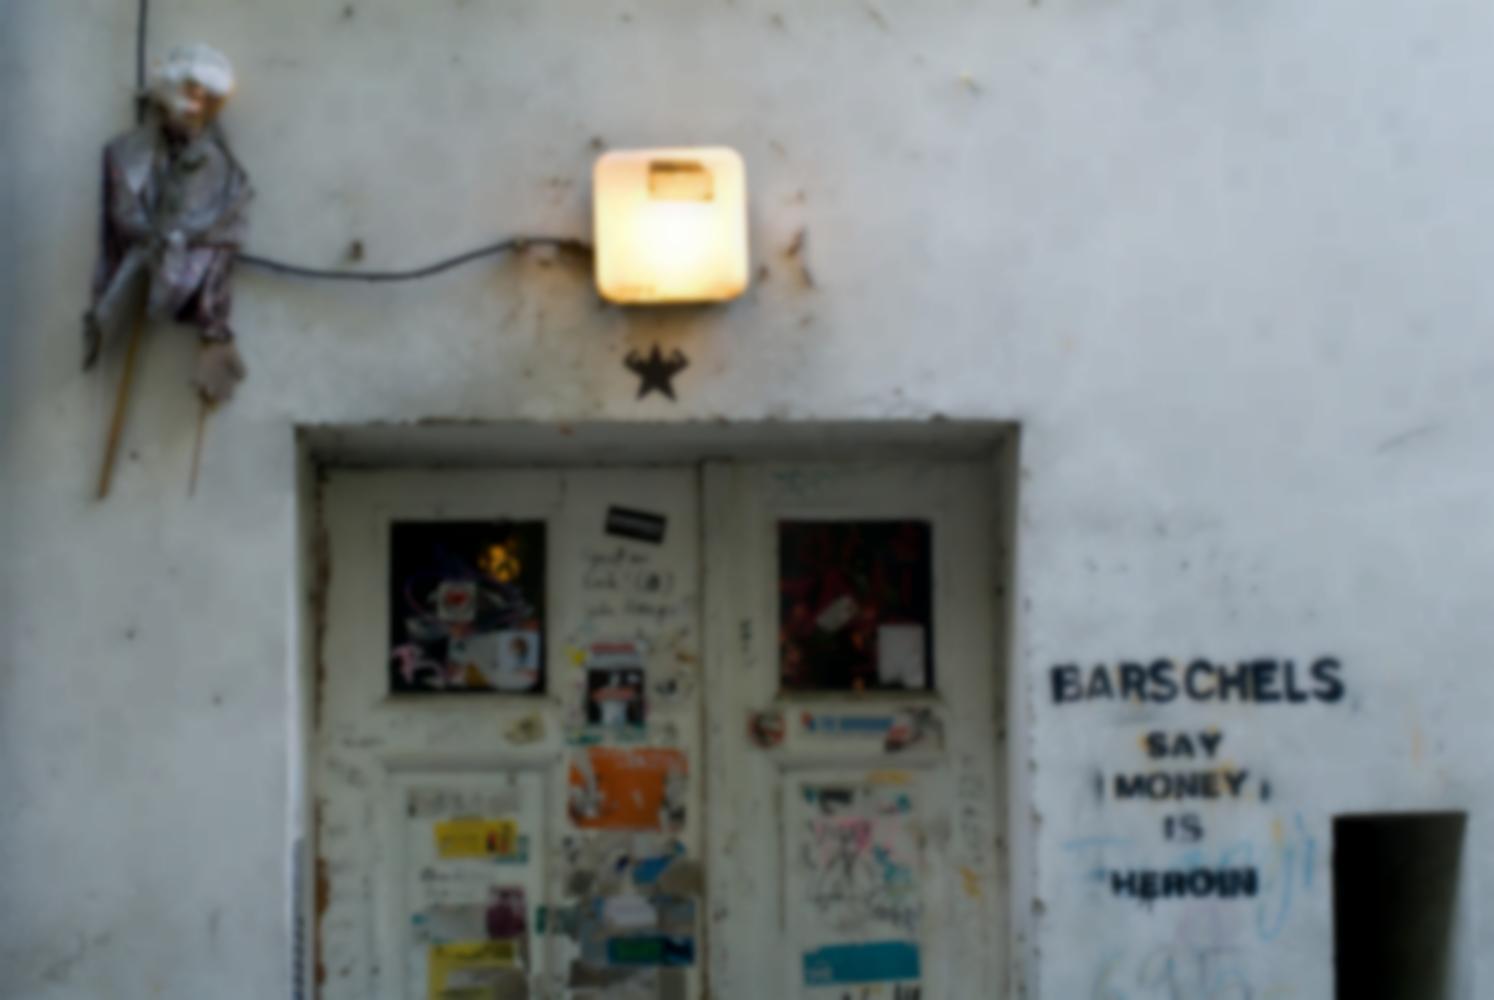 A côté d'une double porte couverte d'affiches et d'autocollants déchirés, surmontée d'une lumière et d'une sorte de grande marionnette, un graffiti au pochoir cite Barschels. Berlin, septembre 2009.